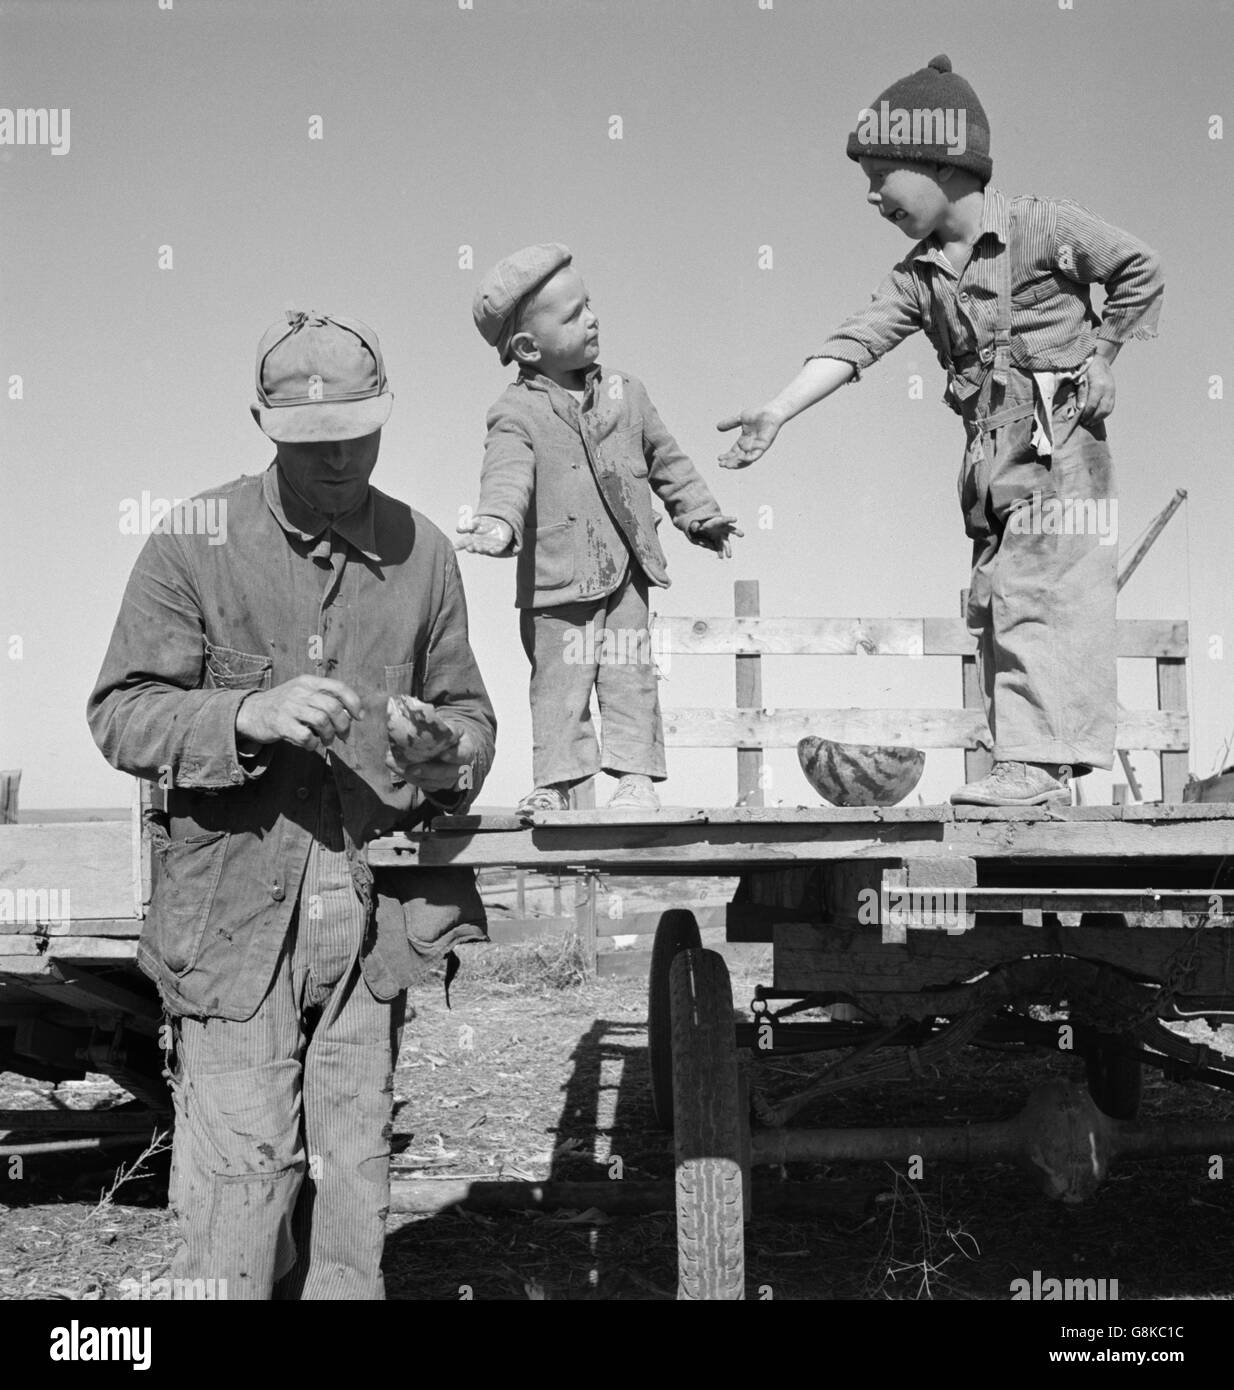 Wanderarbeitnehmer geben seine zwei Söhne Wassermelone, Tote Ochsen flach, Malheur Grafschaft, Oregon, USA, Dorothea Lange für Farm Security Administration, Oktober 1939 Stockfoto